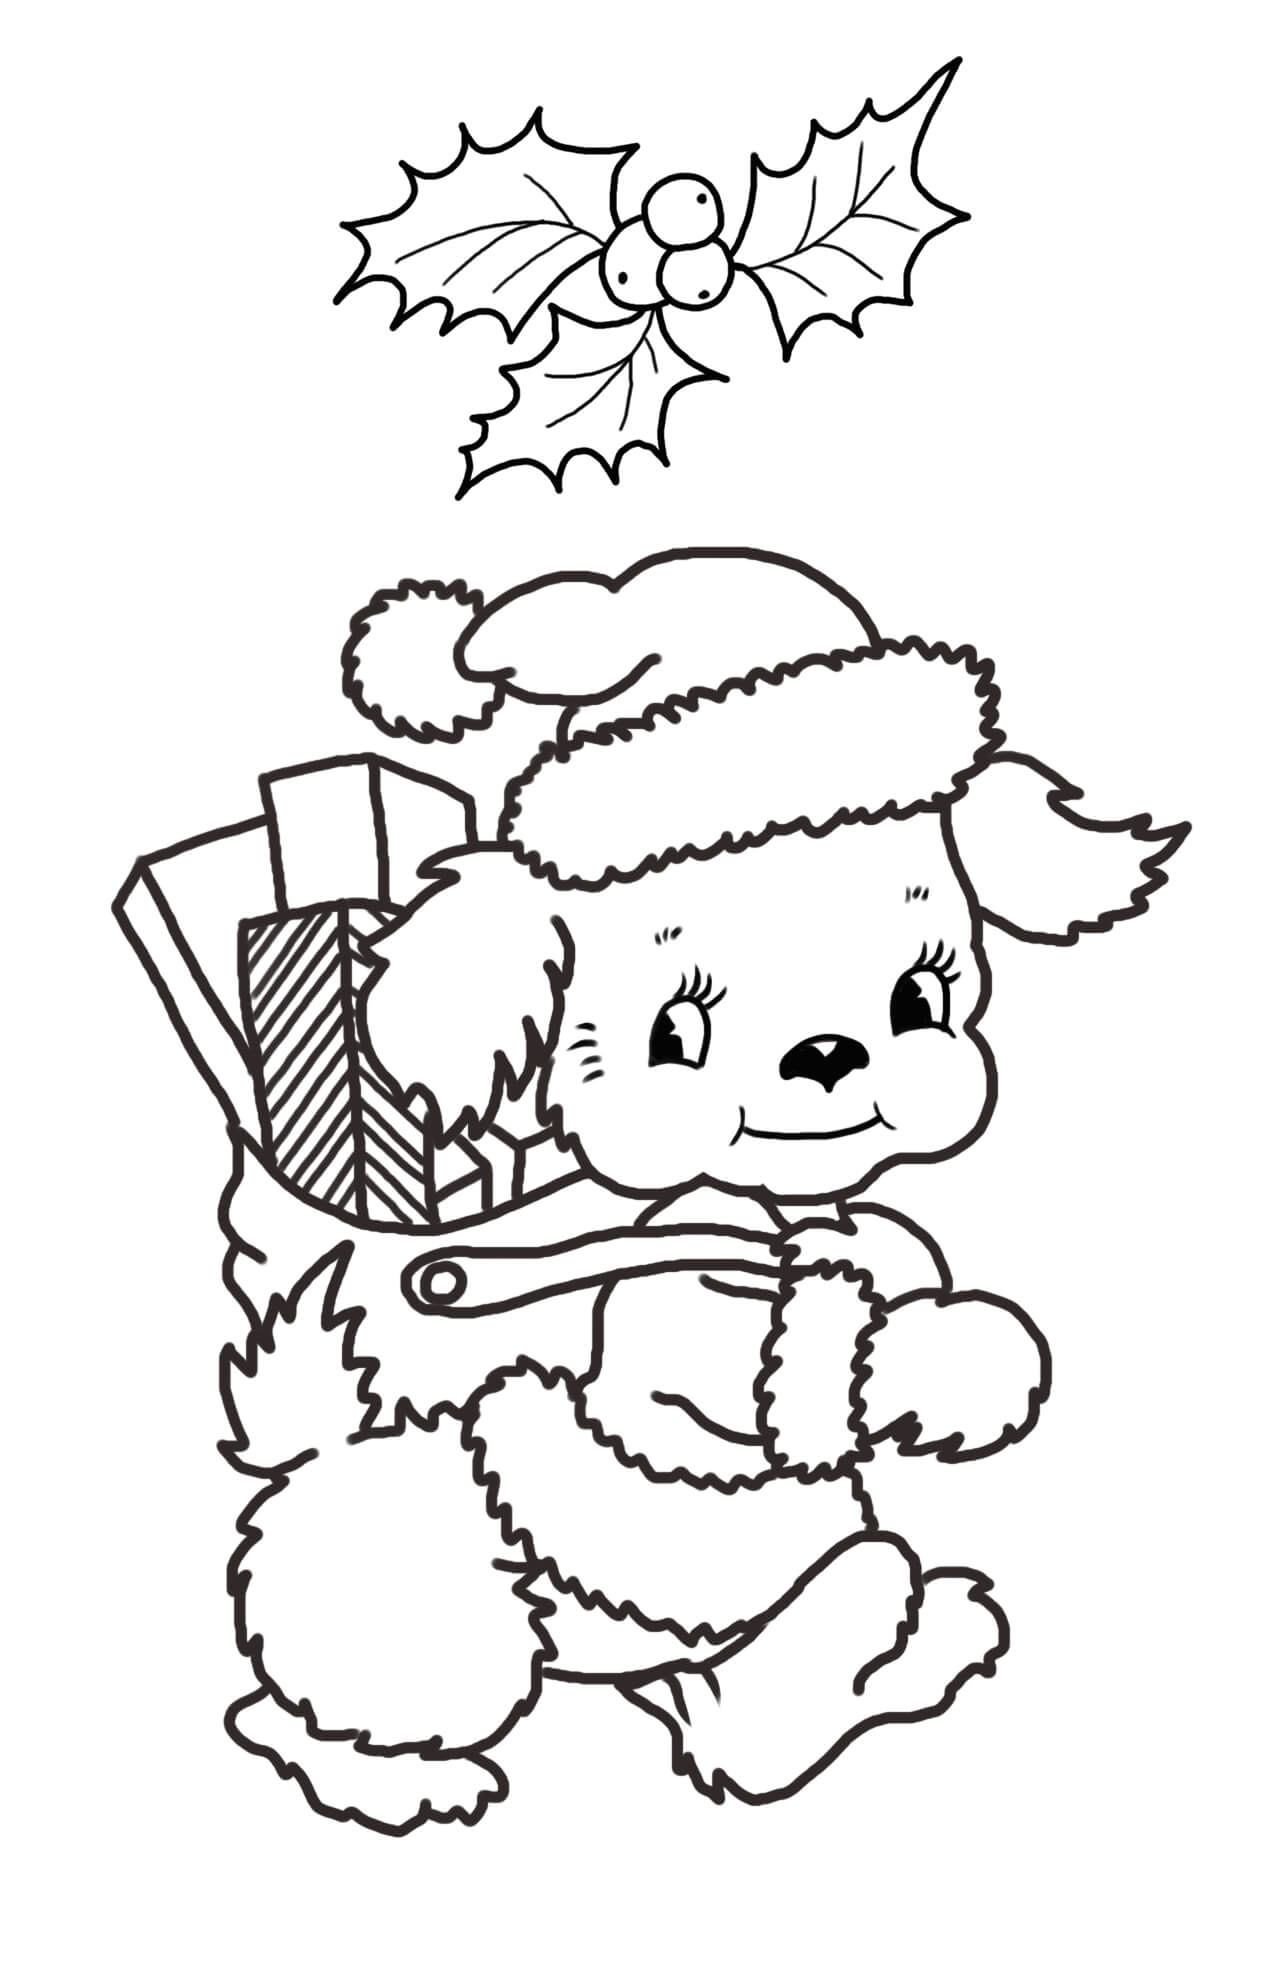 Pup met geschenkdozen in Kerstmis